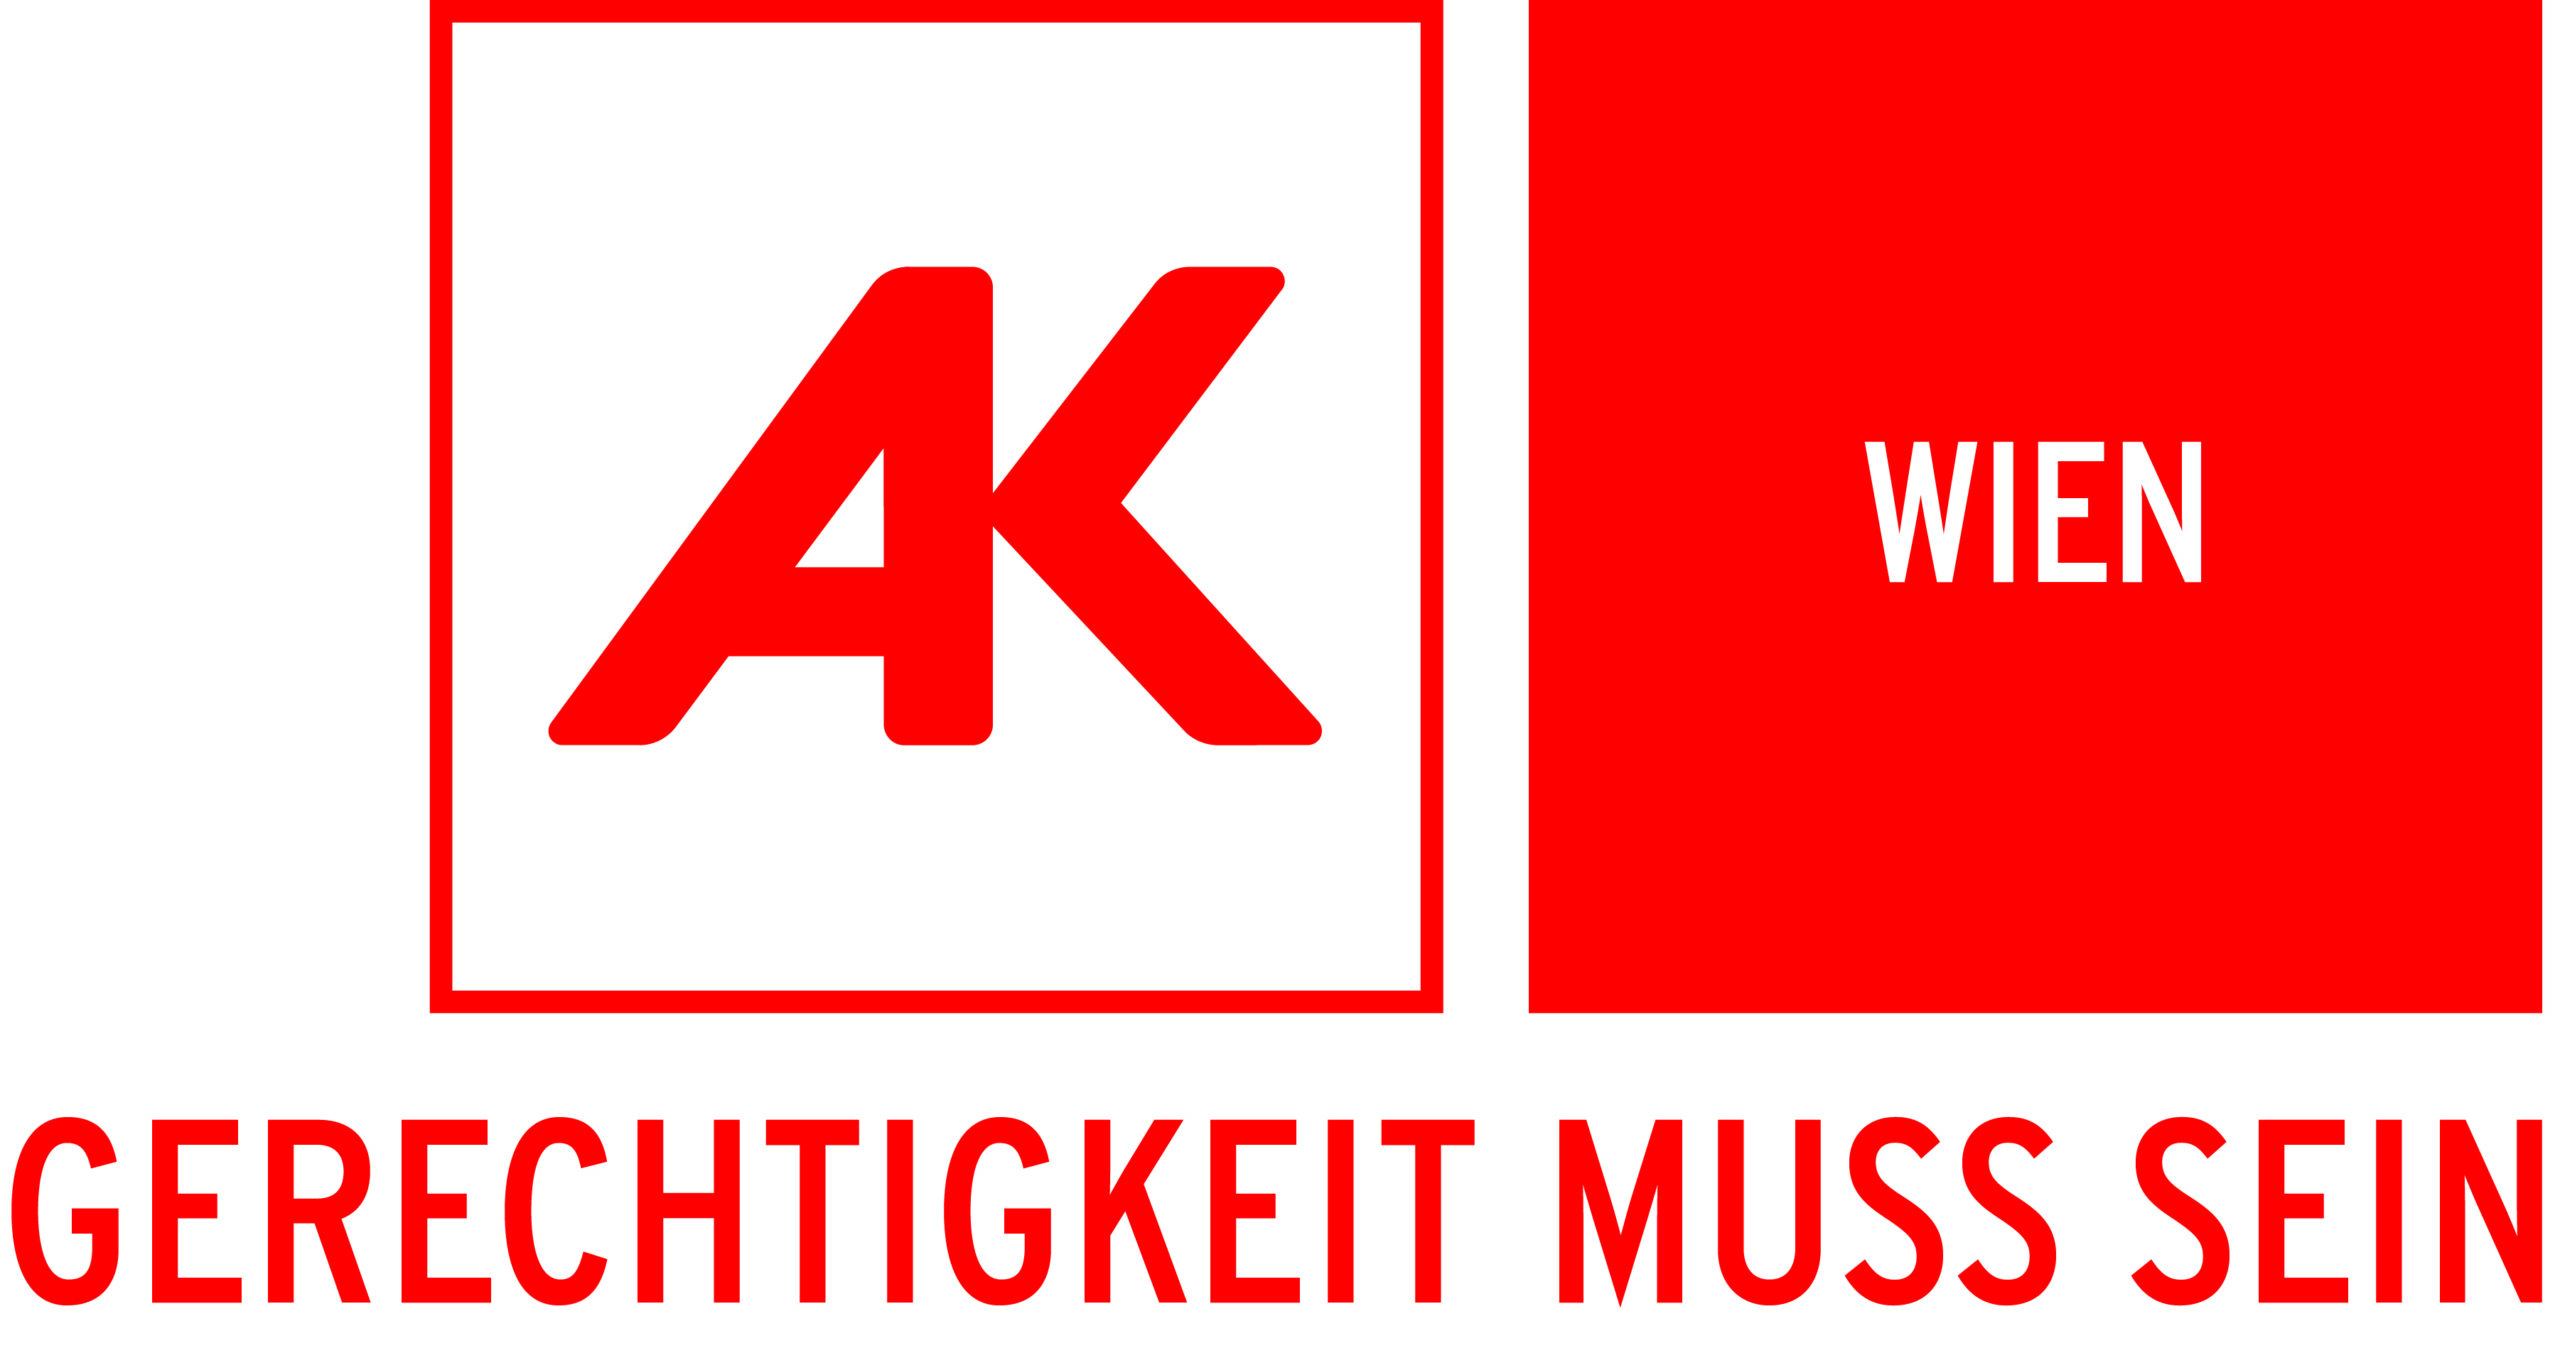 AK Wien